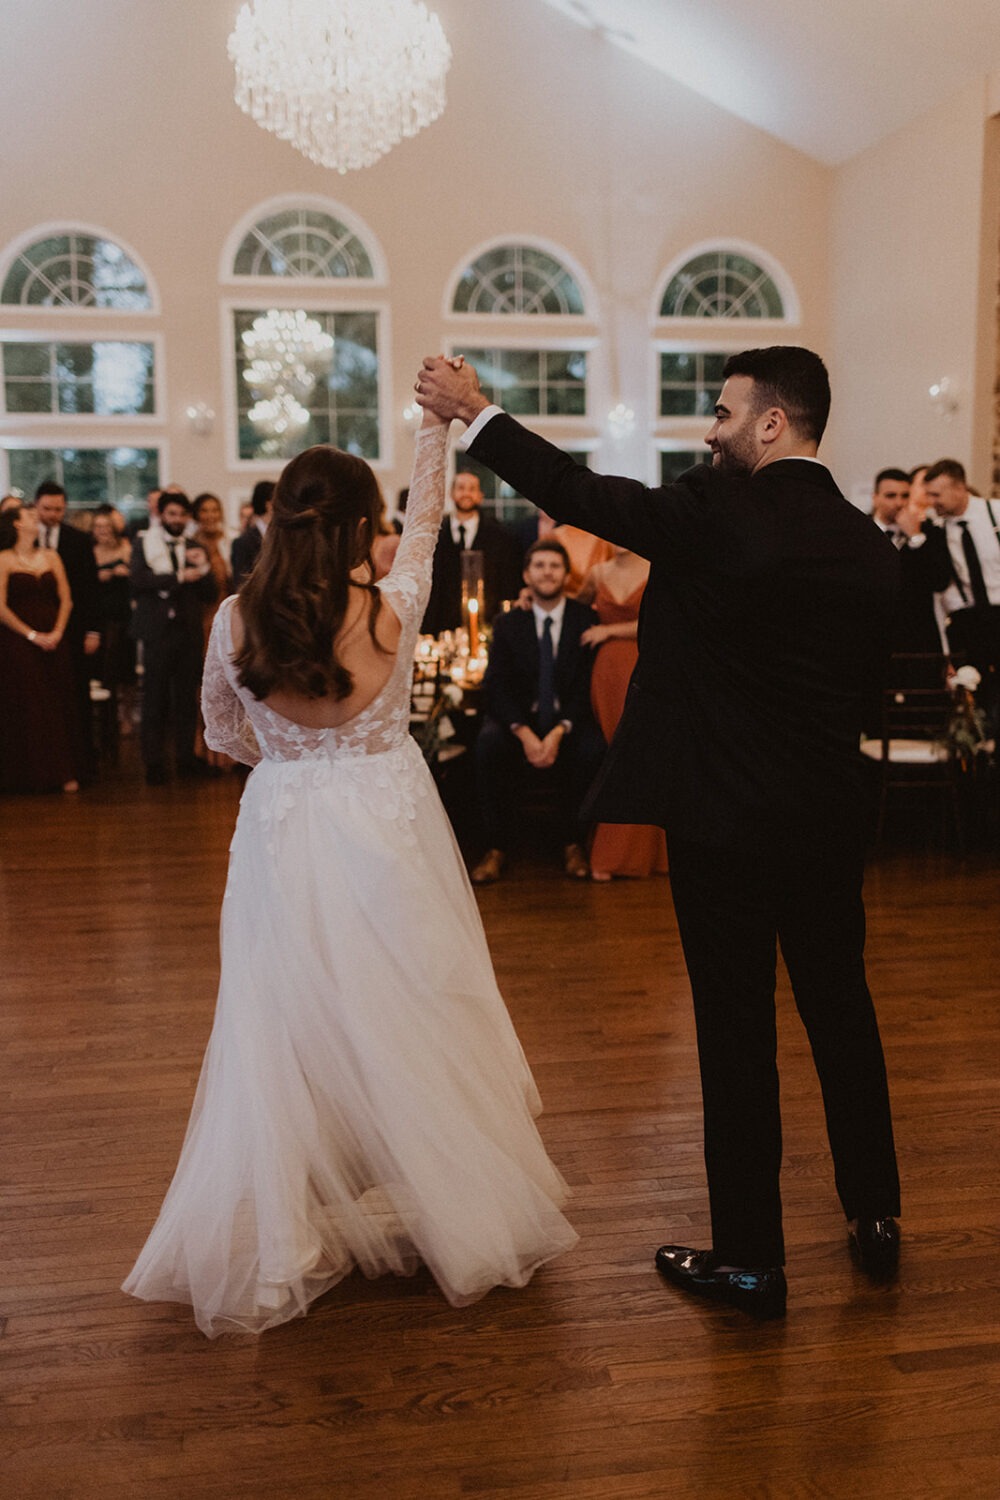 couple dances on reception floor at Virginia wedding venue